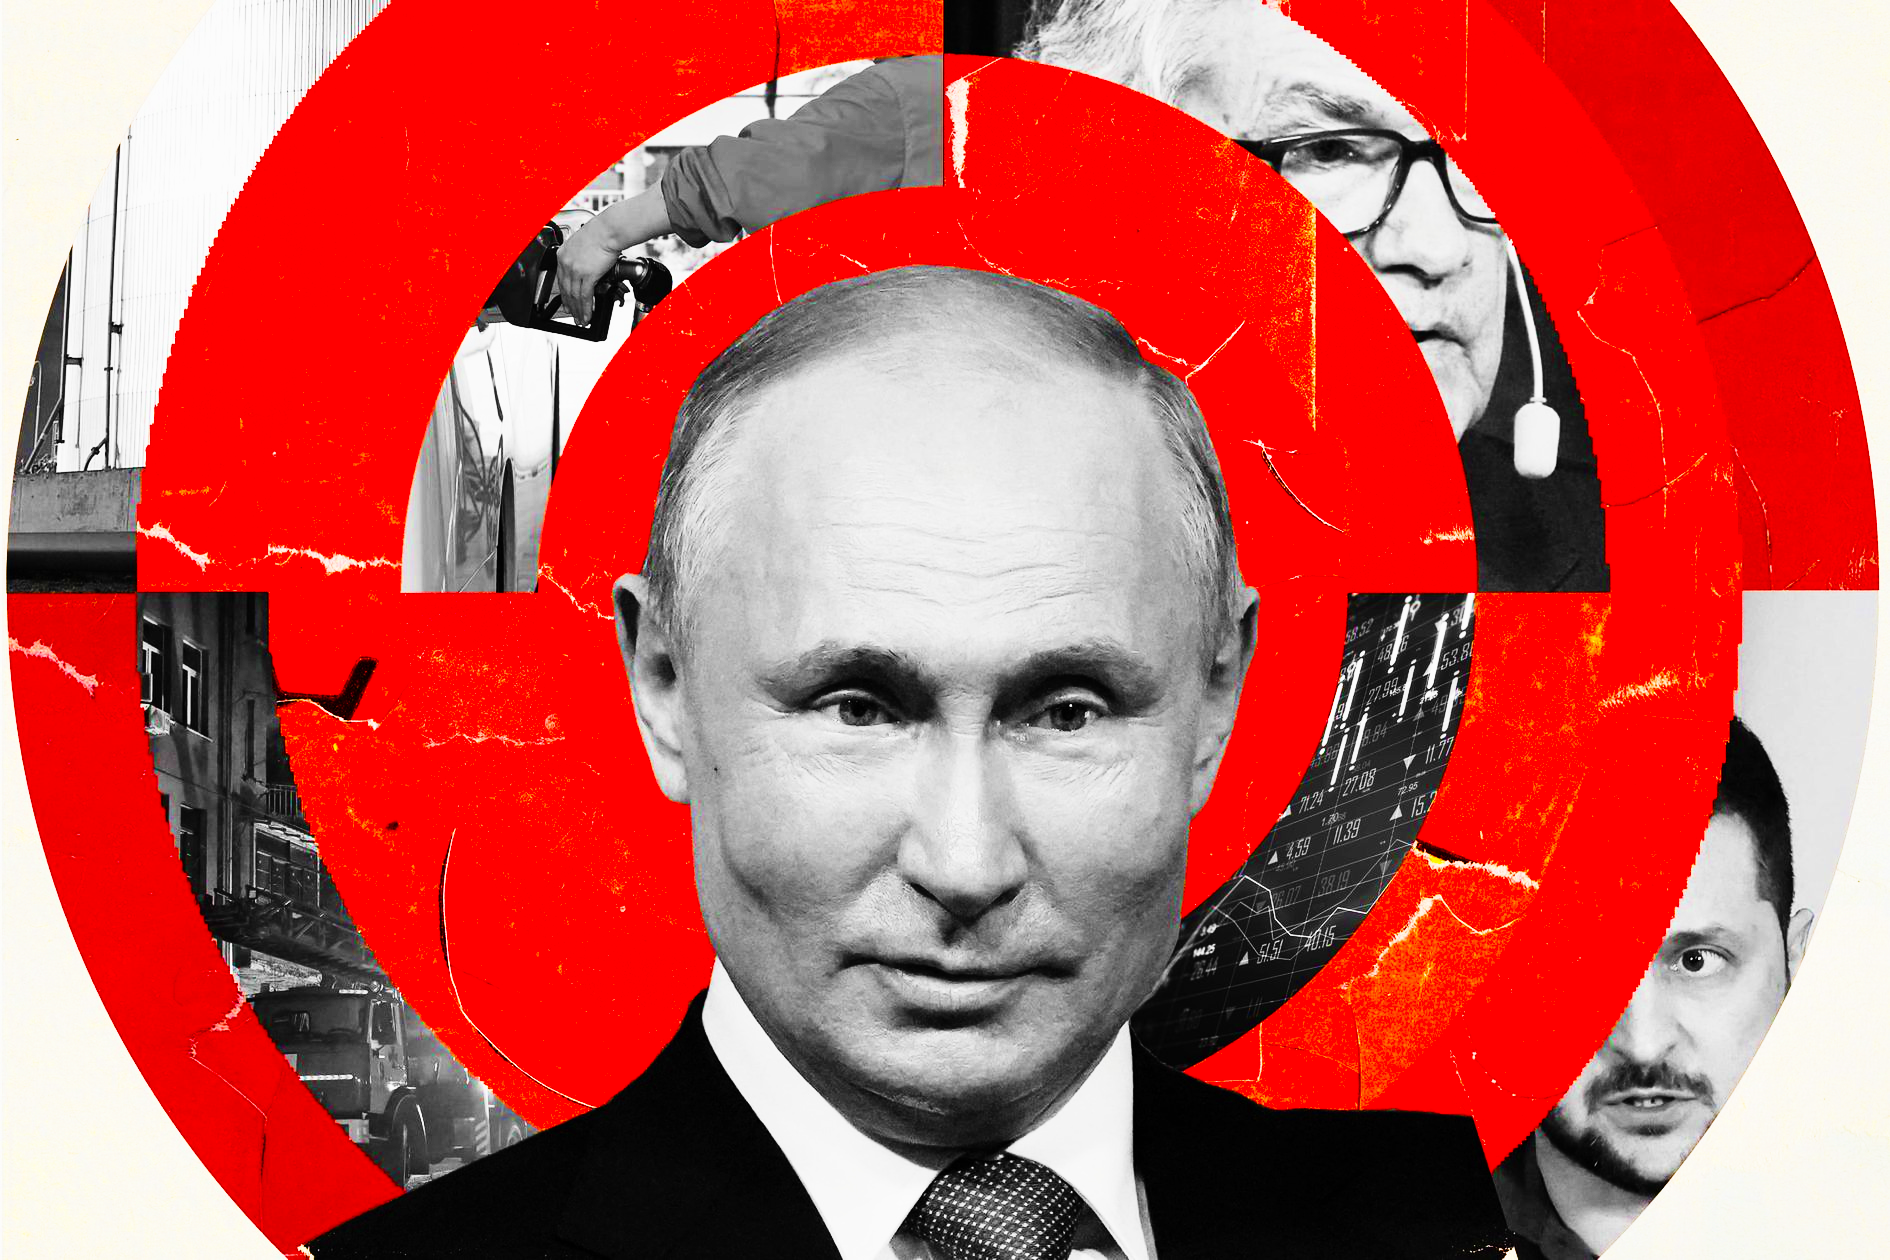 Ngày 24 tháng 2 năm 2023 sẽ đánh dấu một năm kể từ khi Tổng thống Nga Vladimir Putin ra lệnh tiến hành một cuộc tấn công toàn diện vào Ukraine. Ảnh: @ANTHONY GERACE.